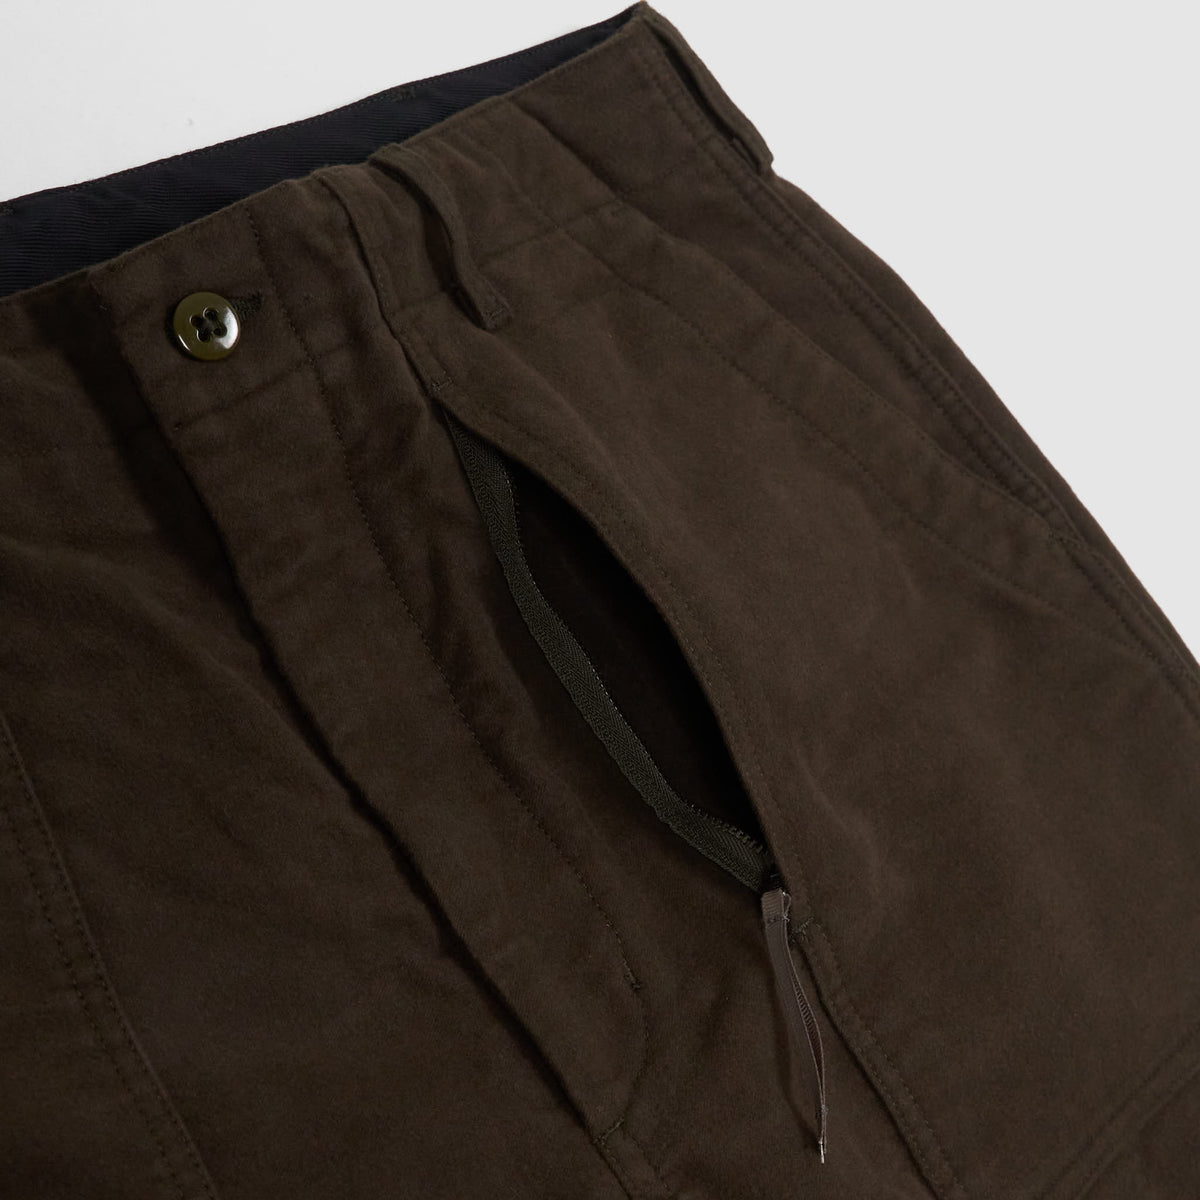 Engineered Garments Moleskin Fatigue Pants - DeeCee style